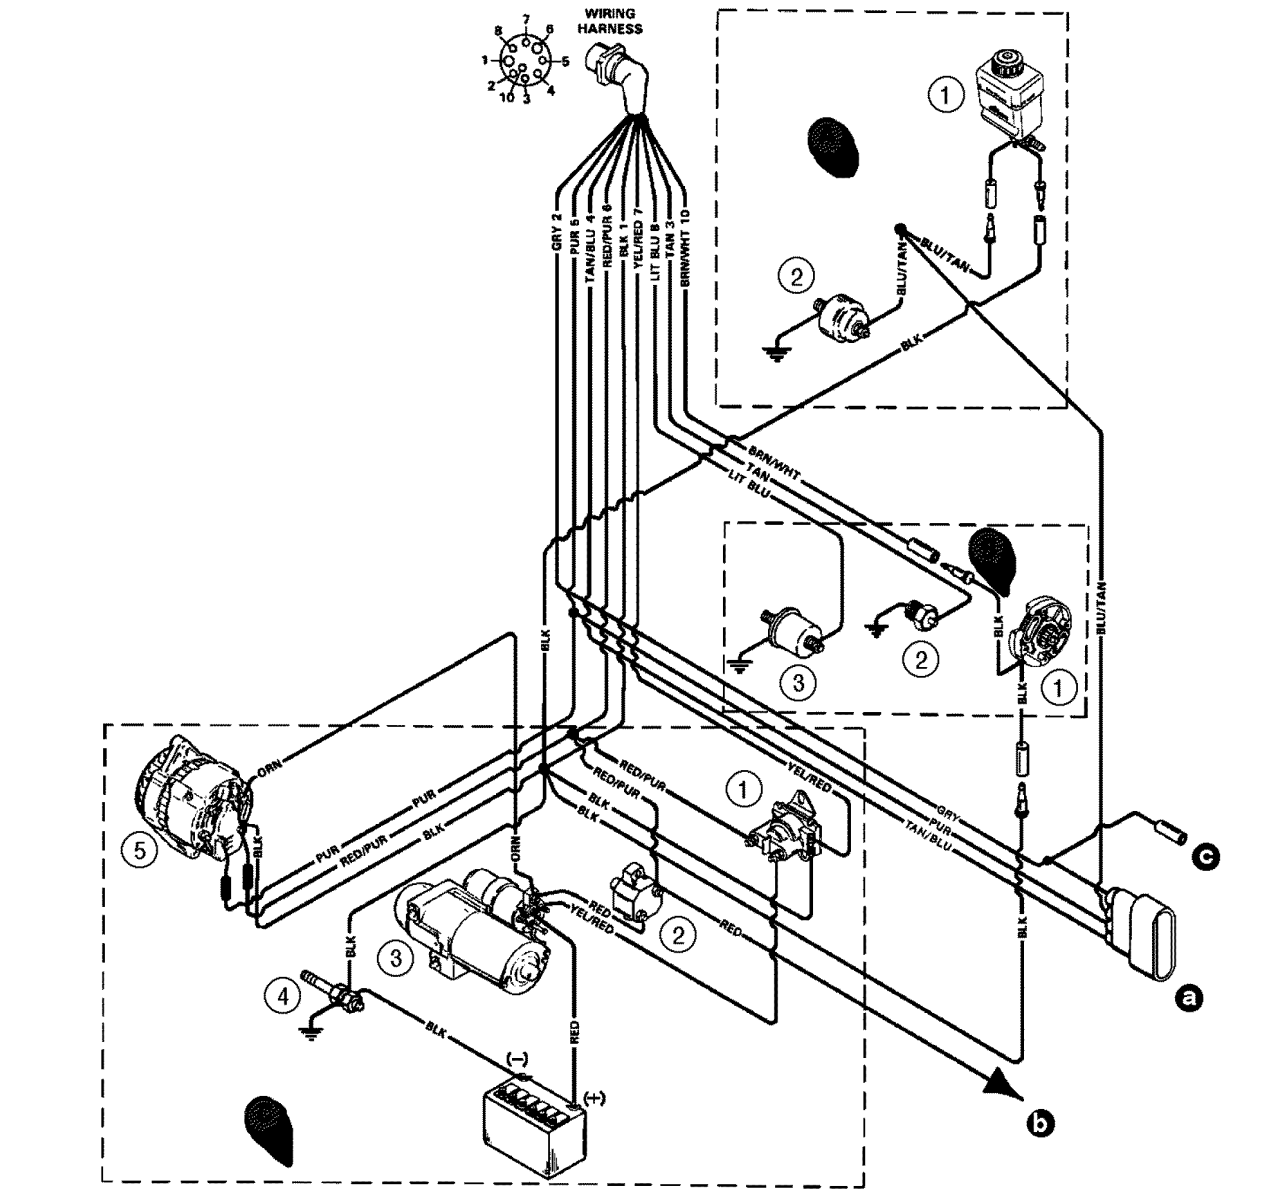 1996 Mercruiser 4.3 Wiring Diagram